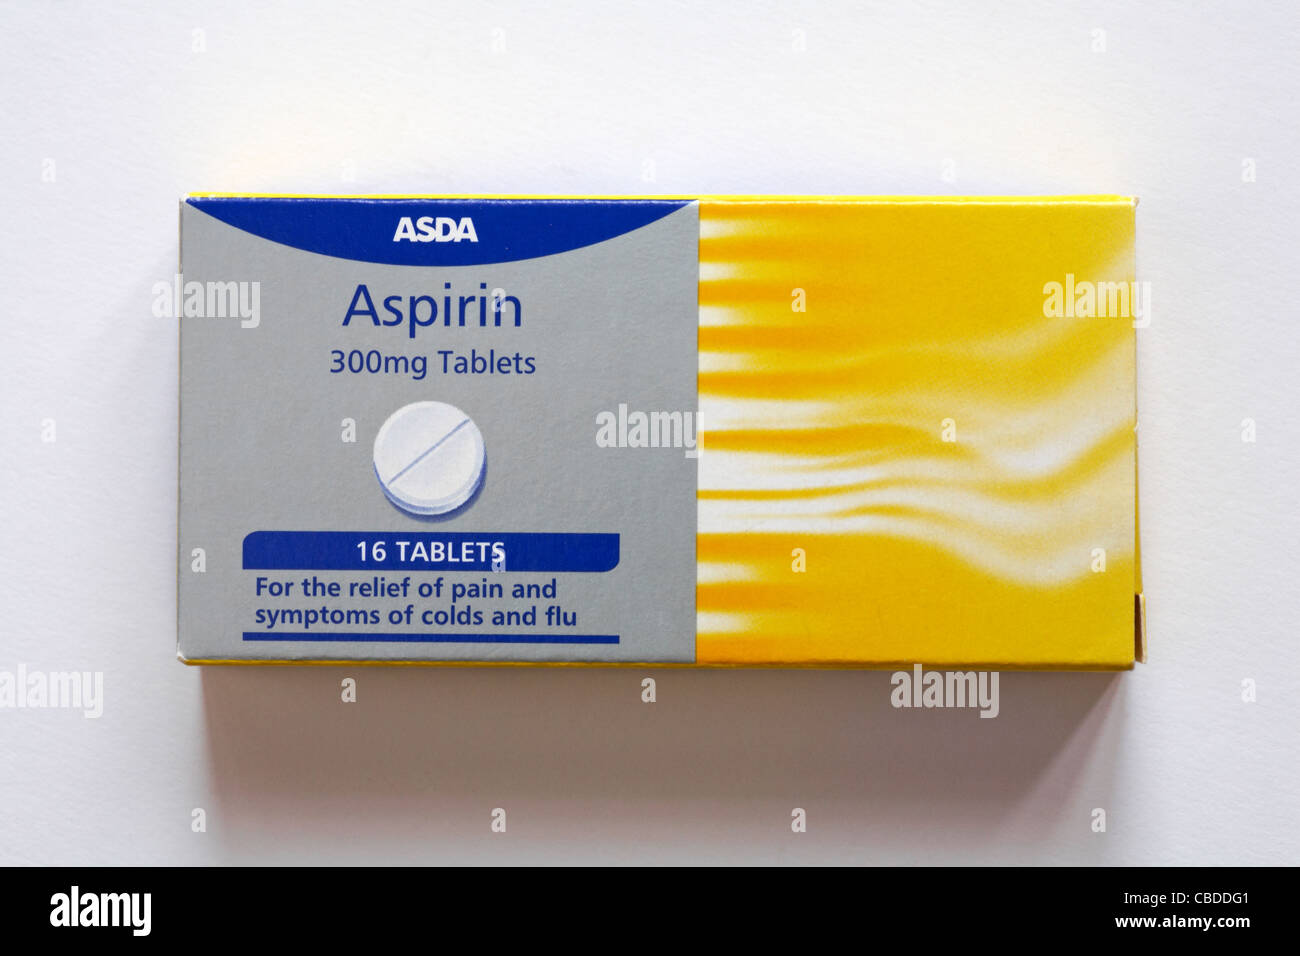 Packung Asda Aspirin Tabletten Schmerzlinderung isoliert auf weißem Hintergrund - zur Linderung von Schmerzen und Symptomen von Erkältungen und Grippe Stockfoto